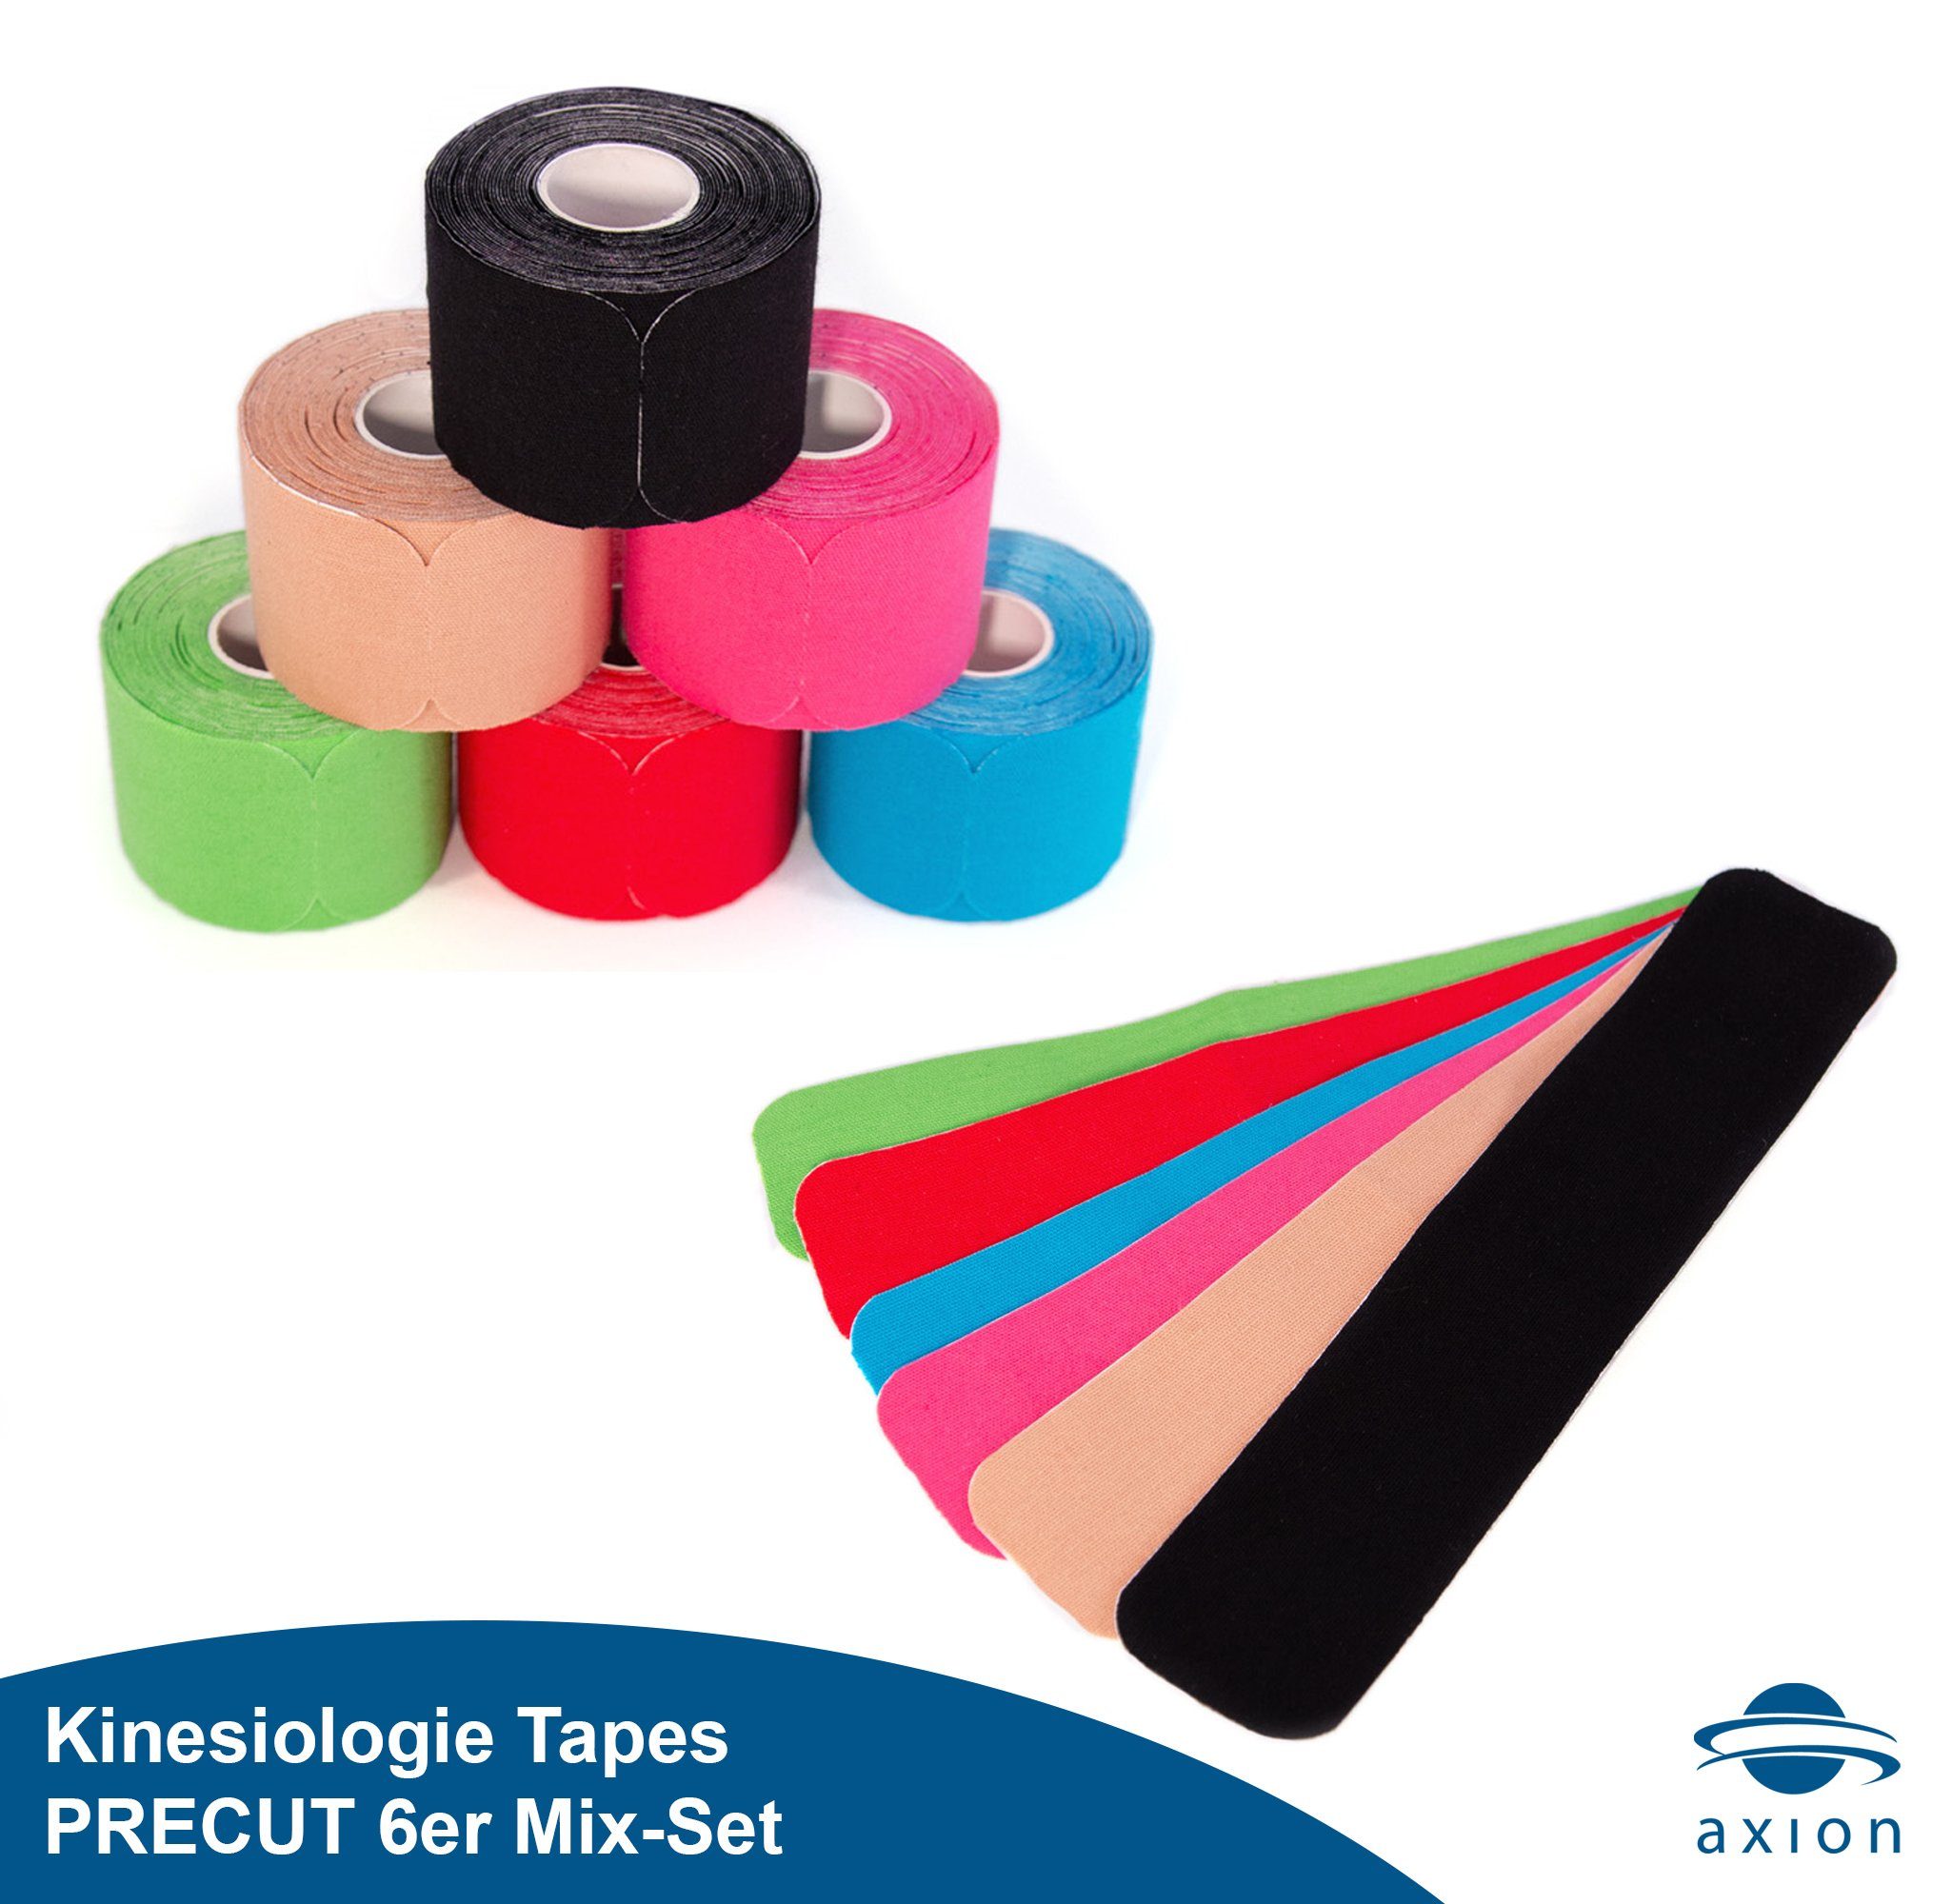 Axion Kinesiologie-Tape »PRECUT 6er Mix-Set, 20 vorgeschnittene Sport Tapes  25 x 5 cm - verschiedene Farben, Wasserfest • hautfreundlich • elastisch,  Kinesio-Tapes selbstklebend« (Set) online kaufen | OTTO